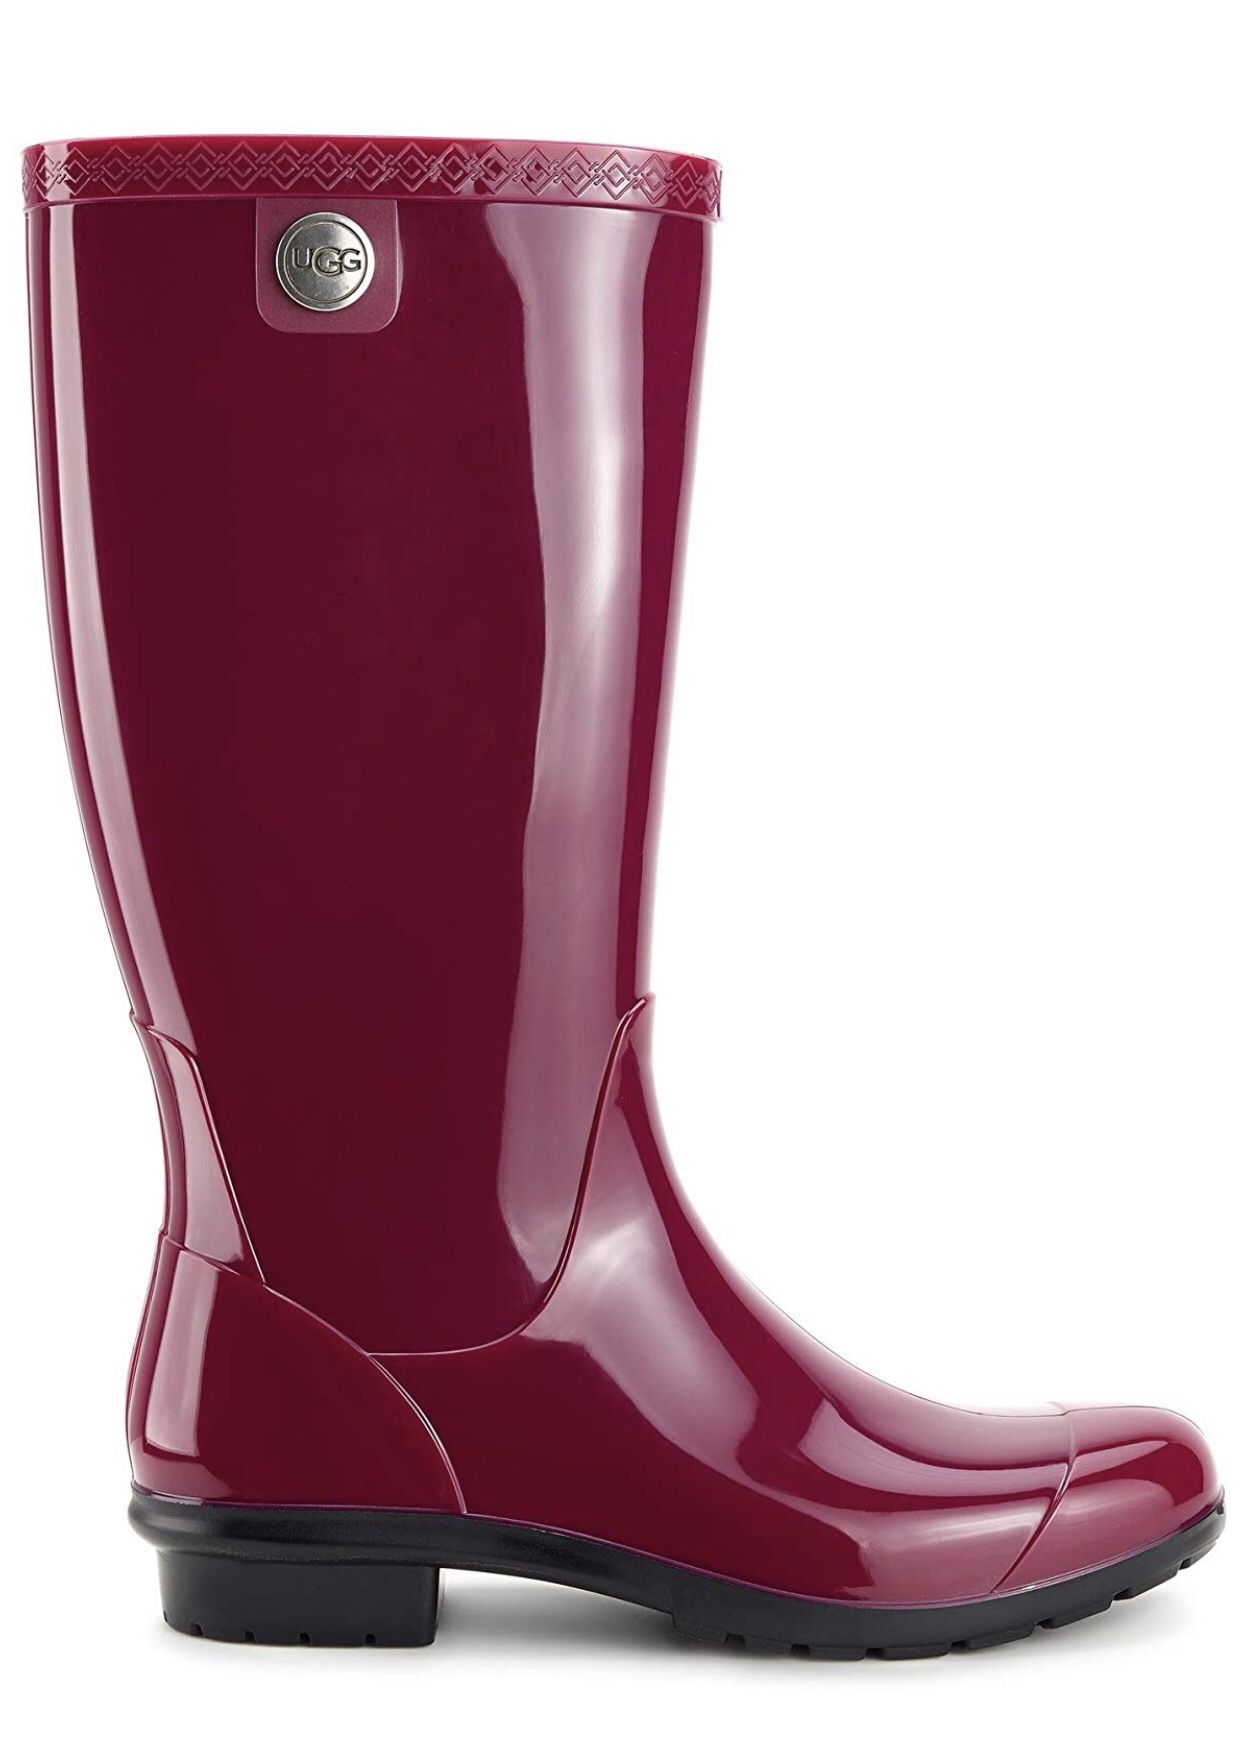 UGG Women’s Shaye Rain Boots Size 7